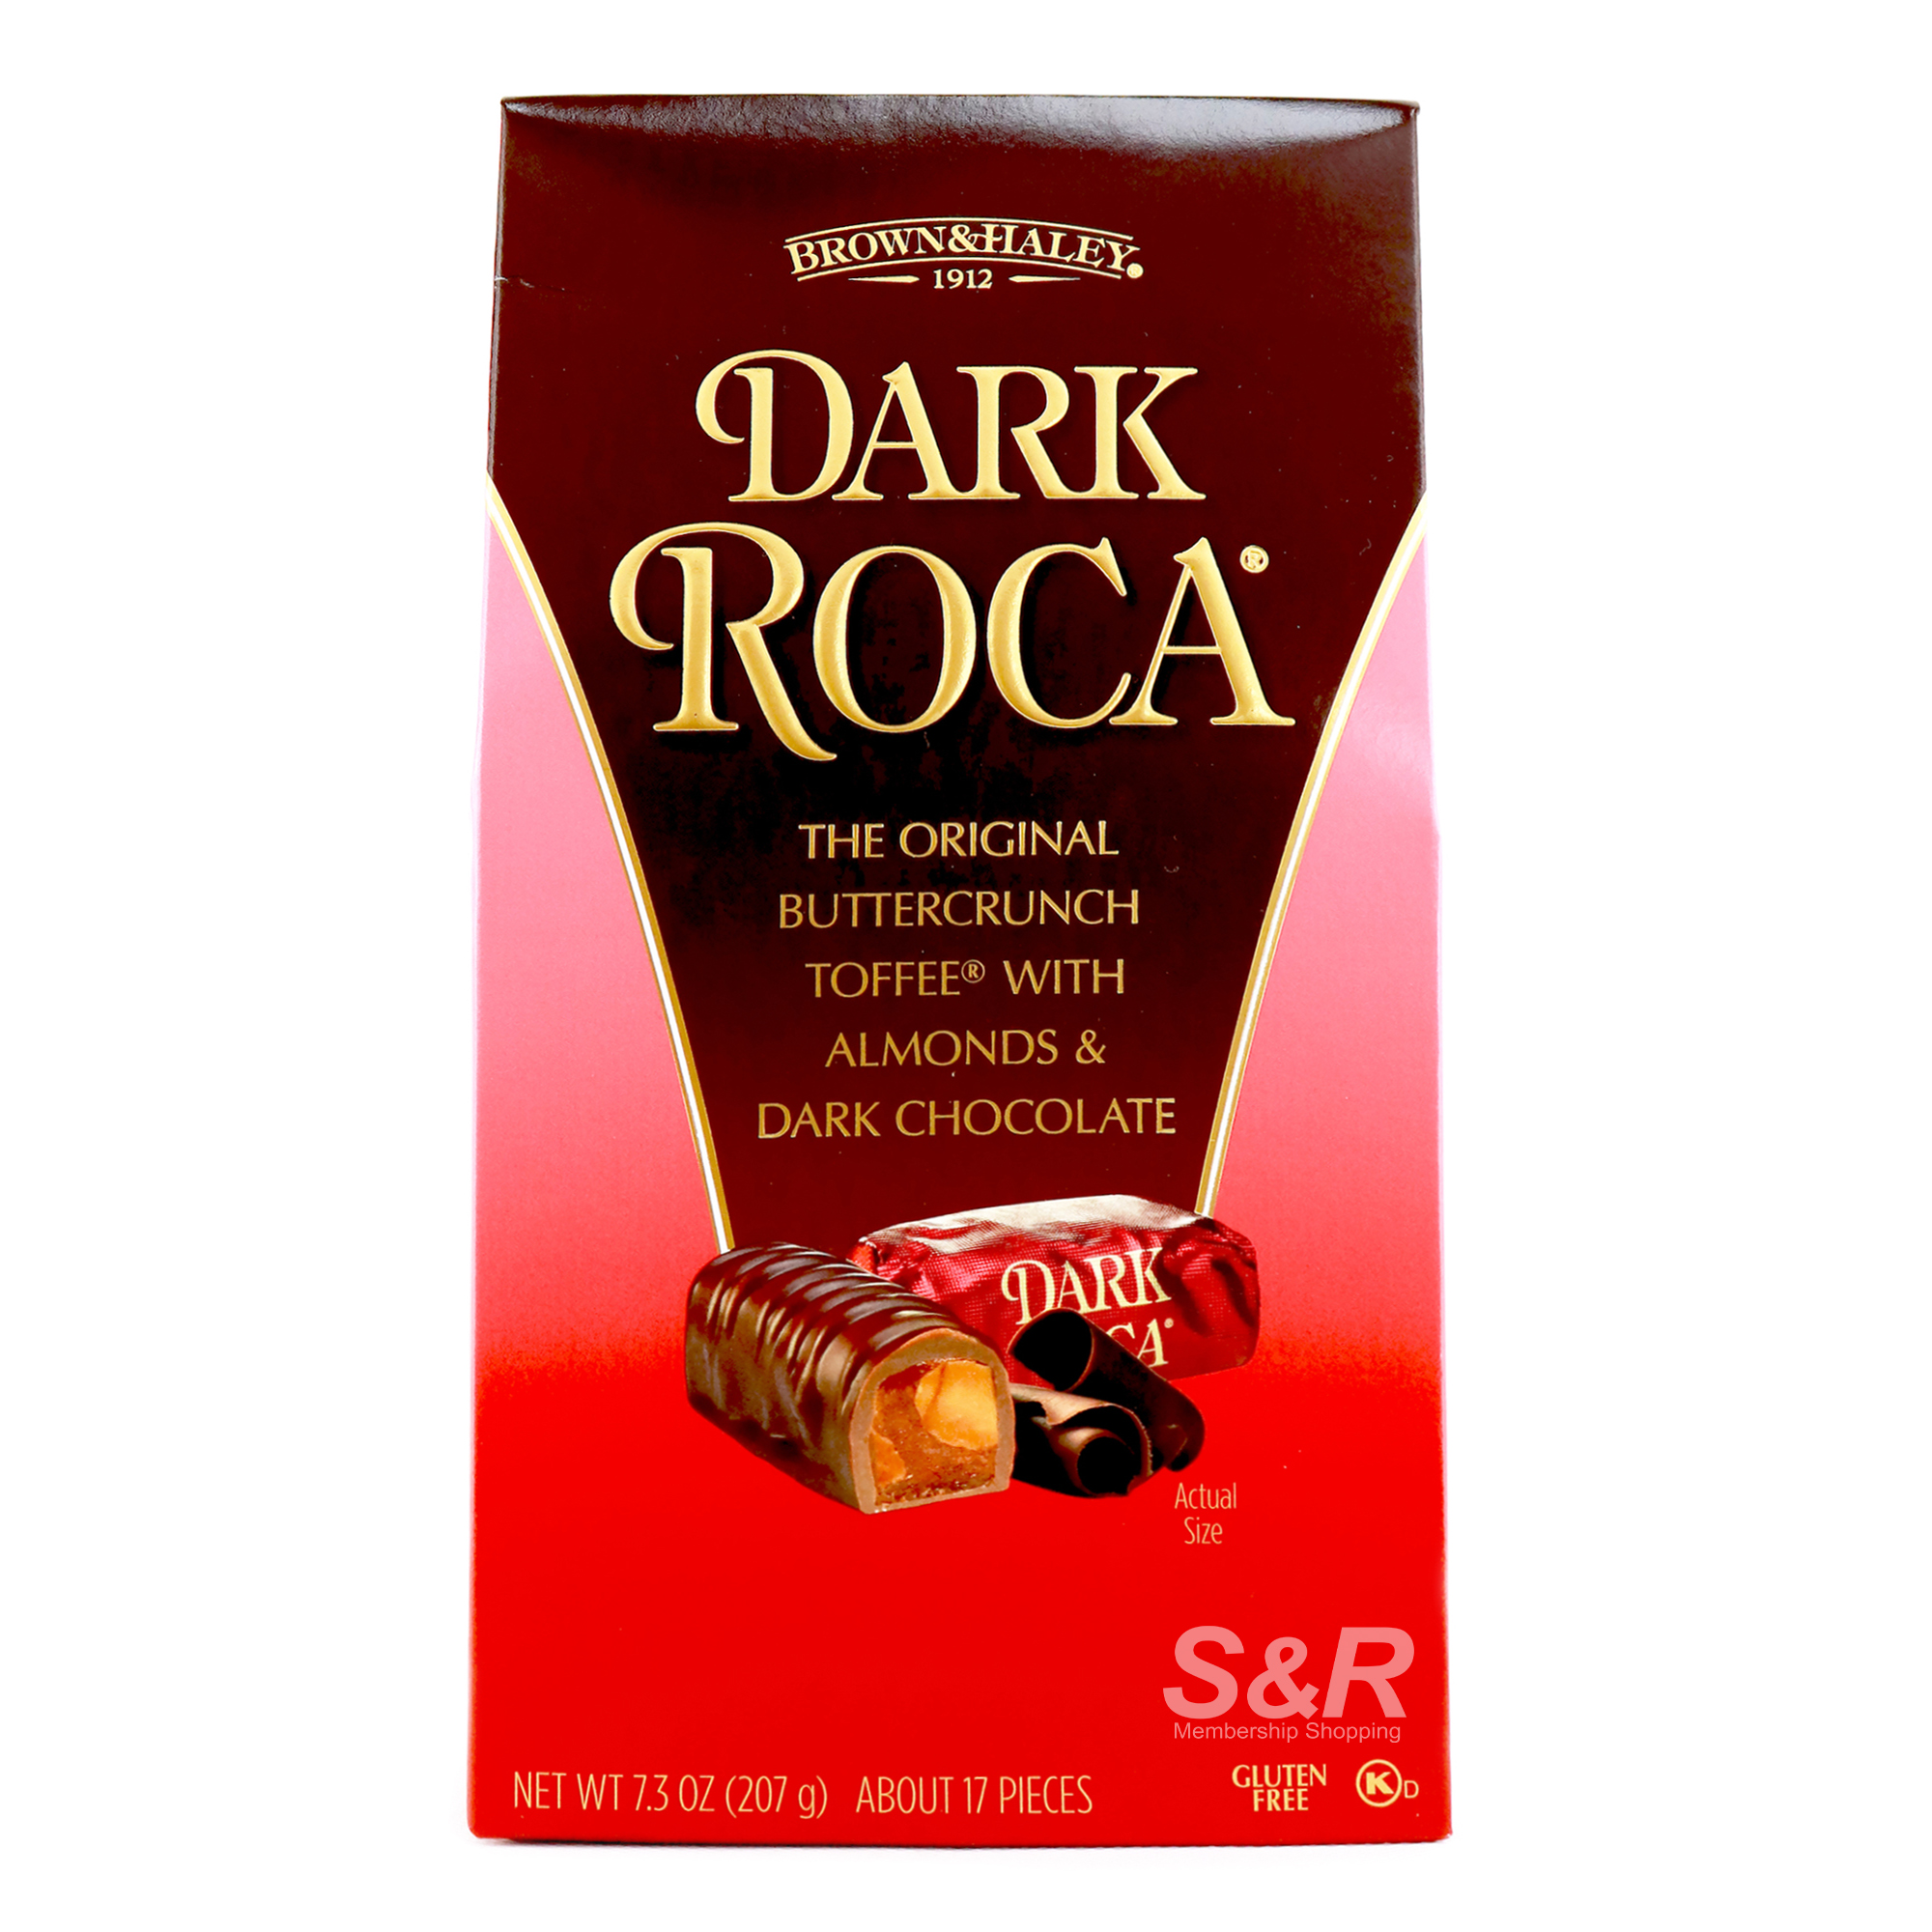 Brown & Haley Dark Roca The Original Buttercrunch Toffee with Almonds & Dark Chocolate 207g